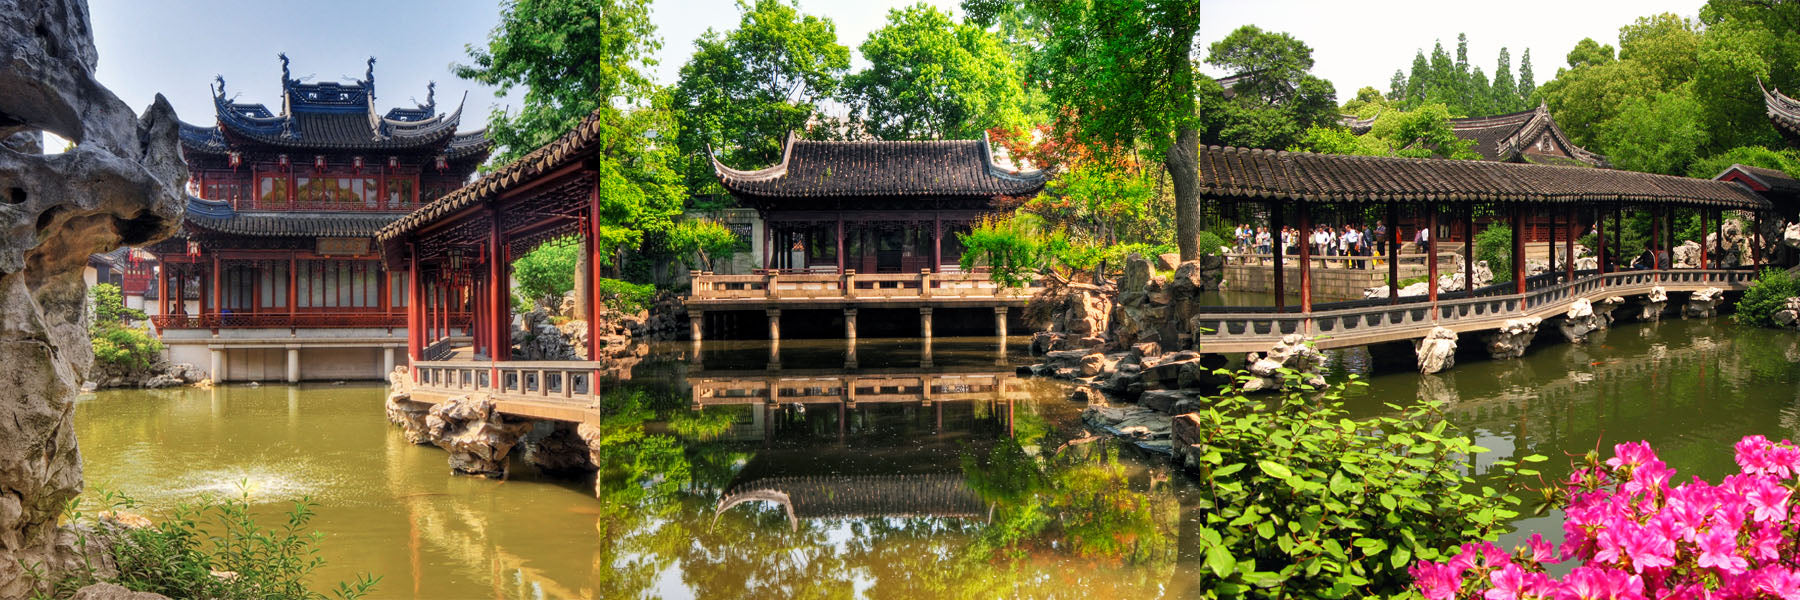 Yuyuan Gardens, China